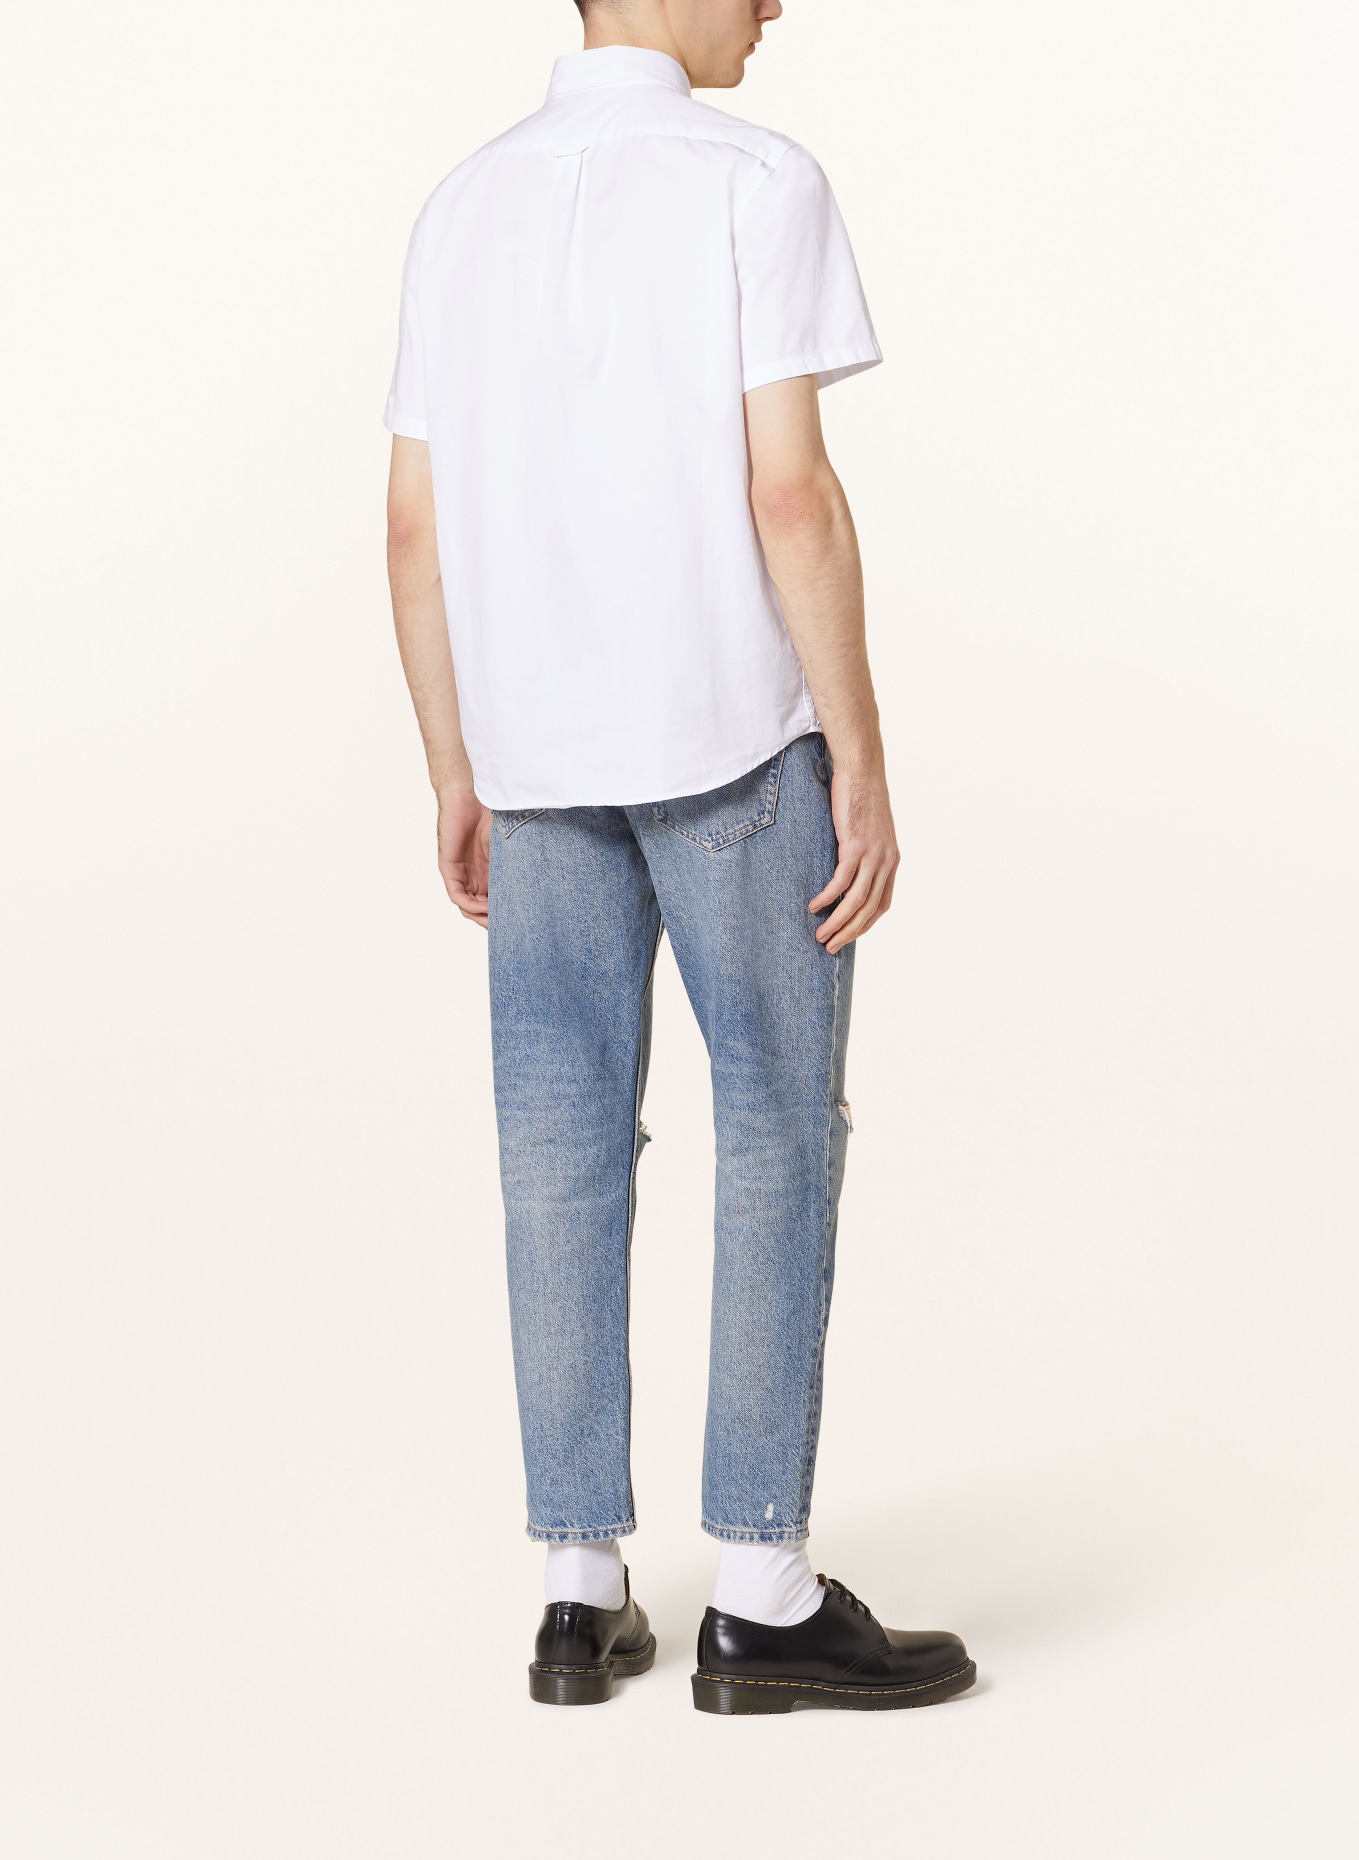 BELSTAFF Short sleeve shirt regular fit, Color: WHITE (Image 3)